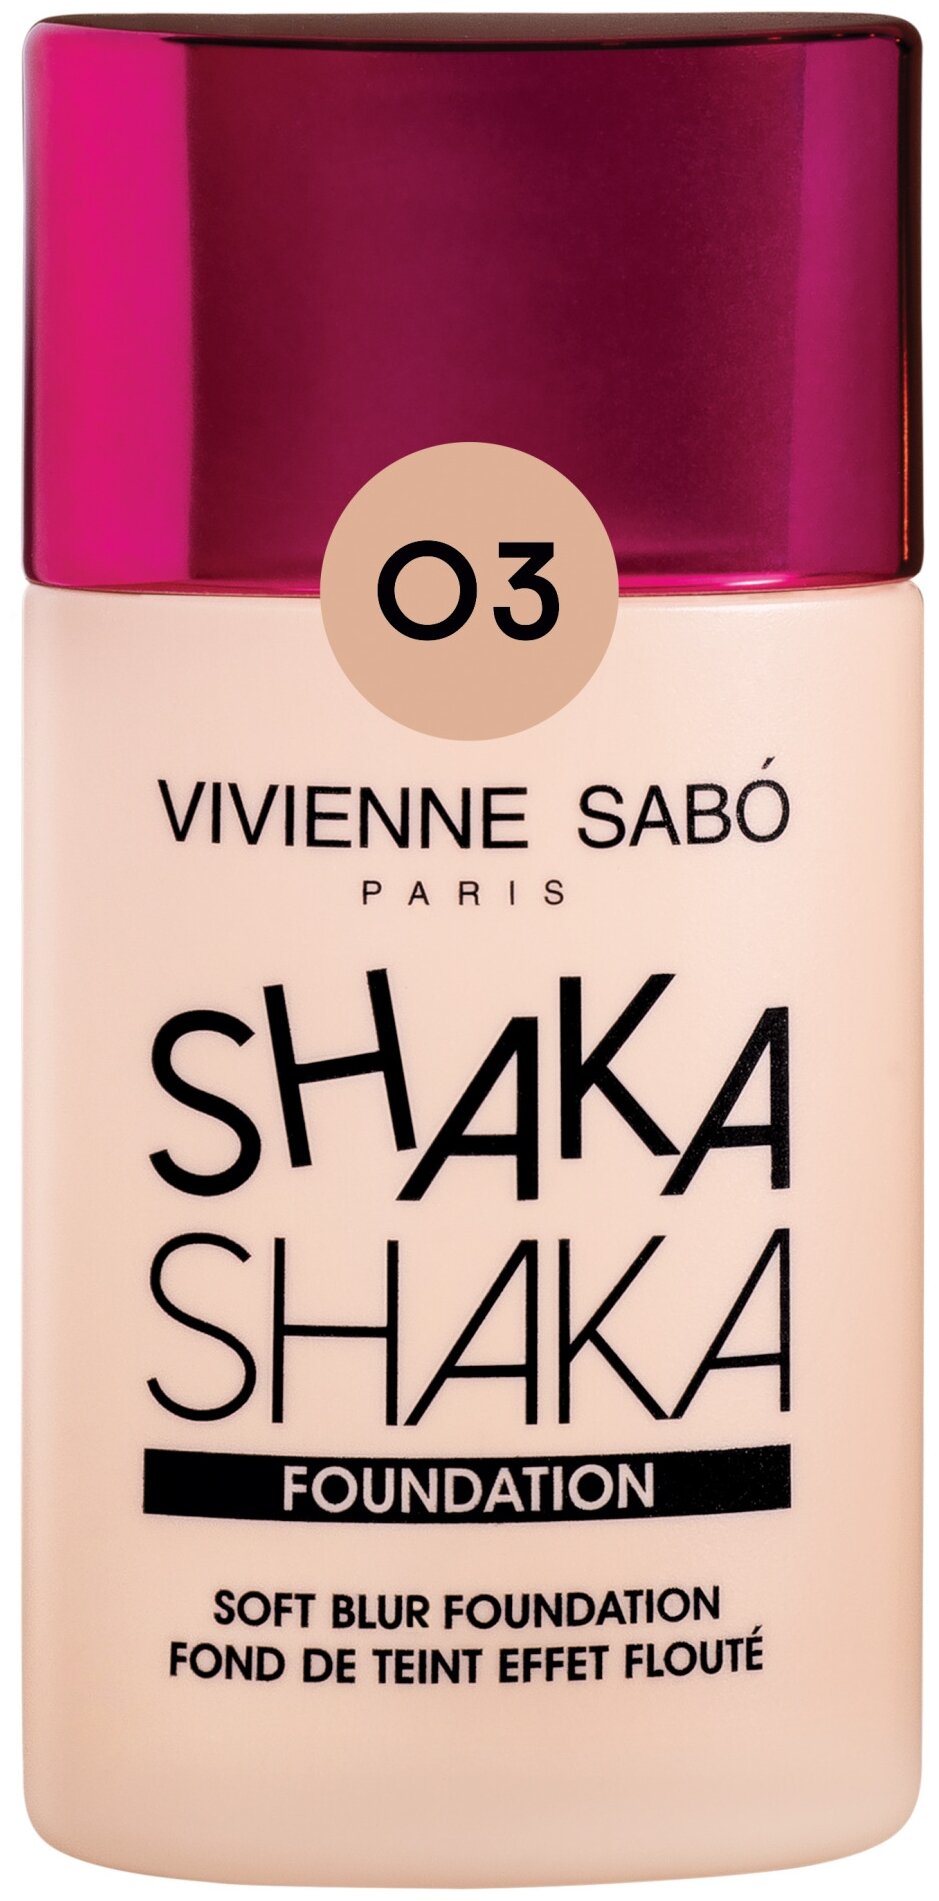 Vivienne Sabo Shaka Shaka